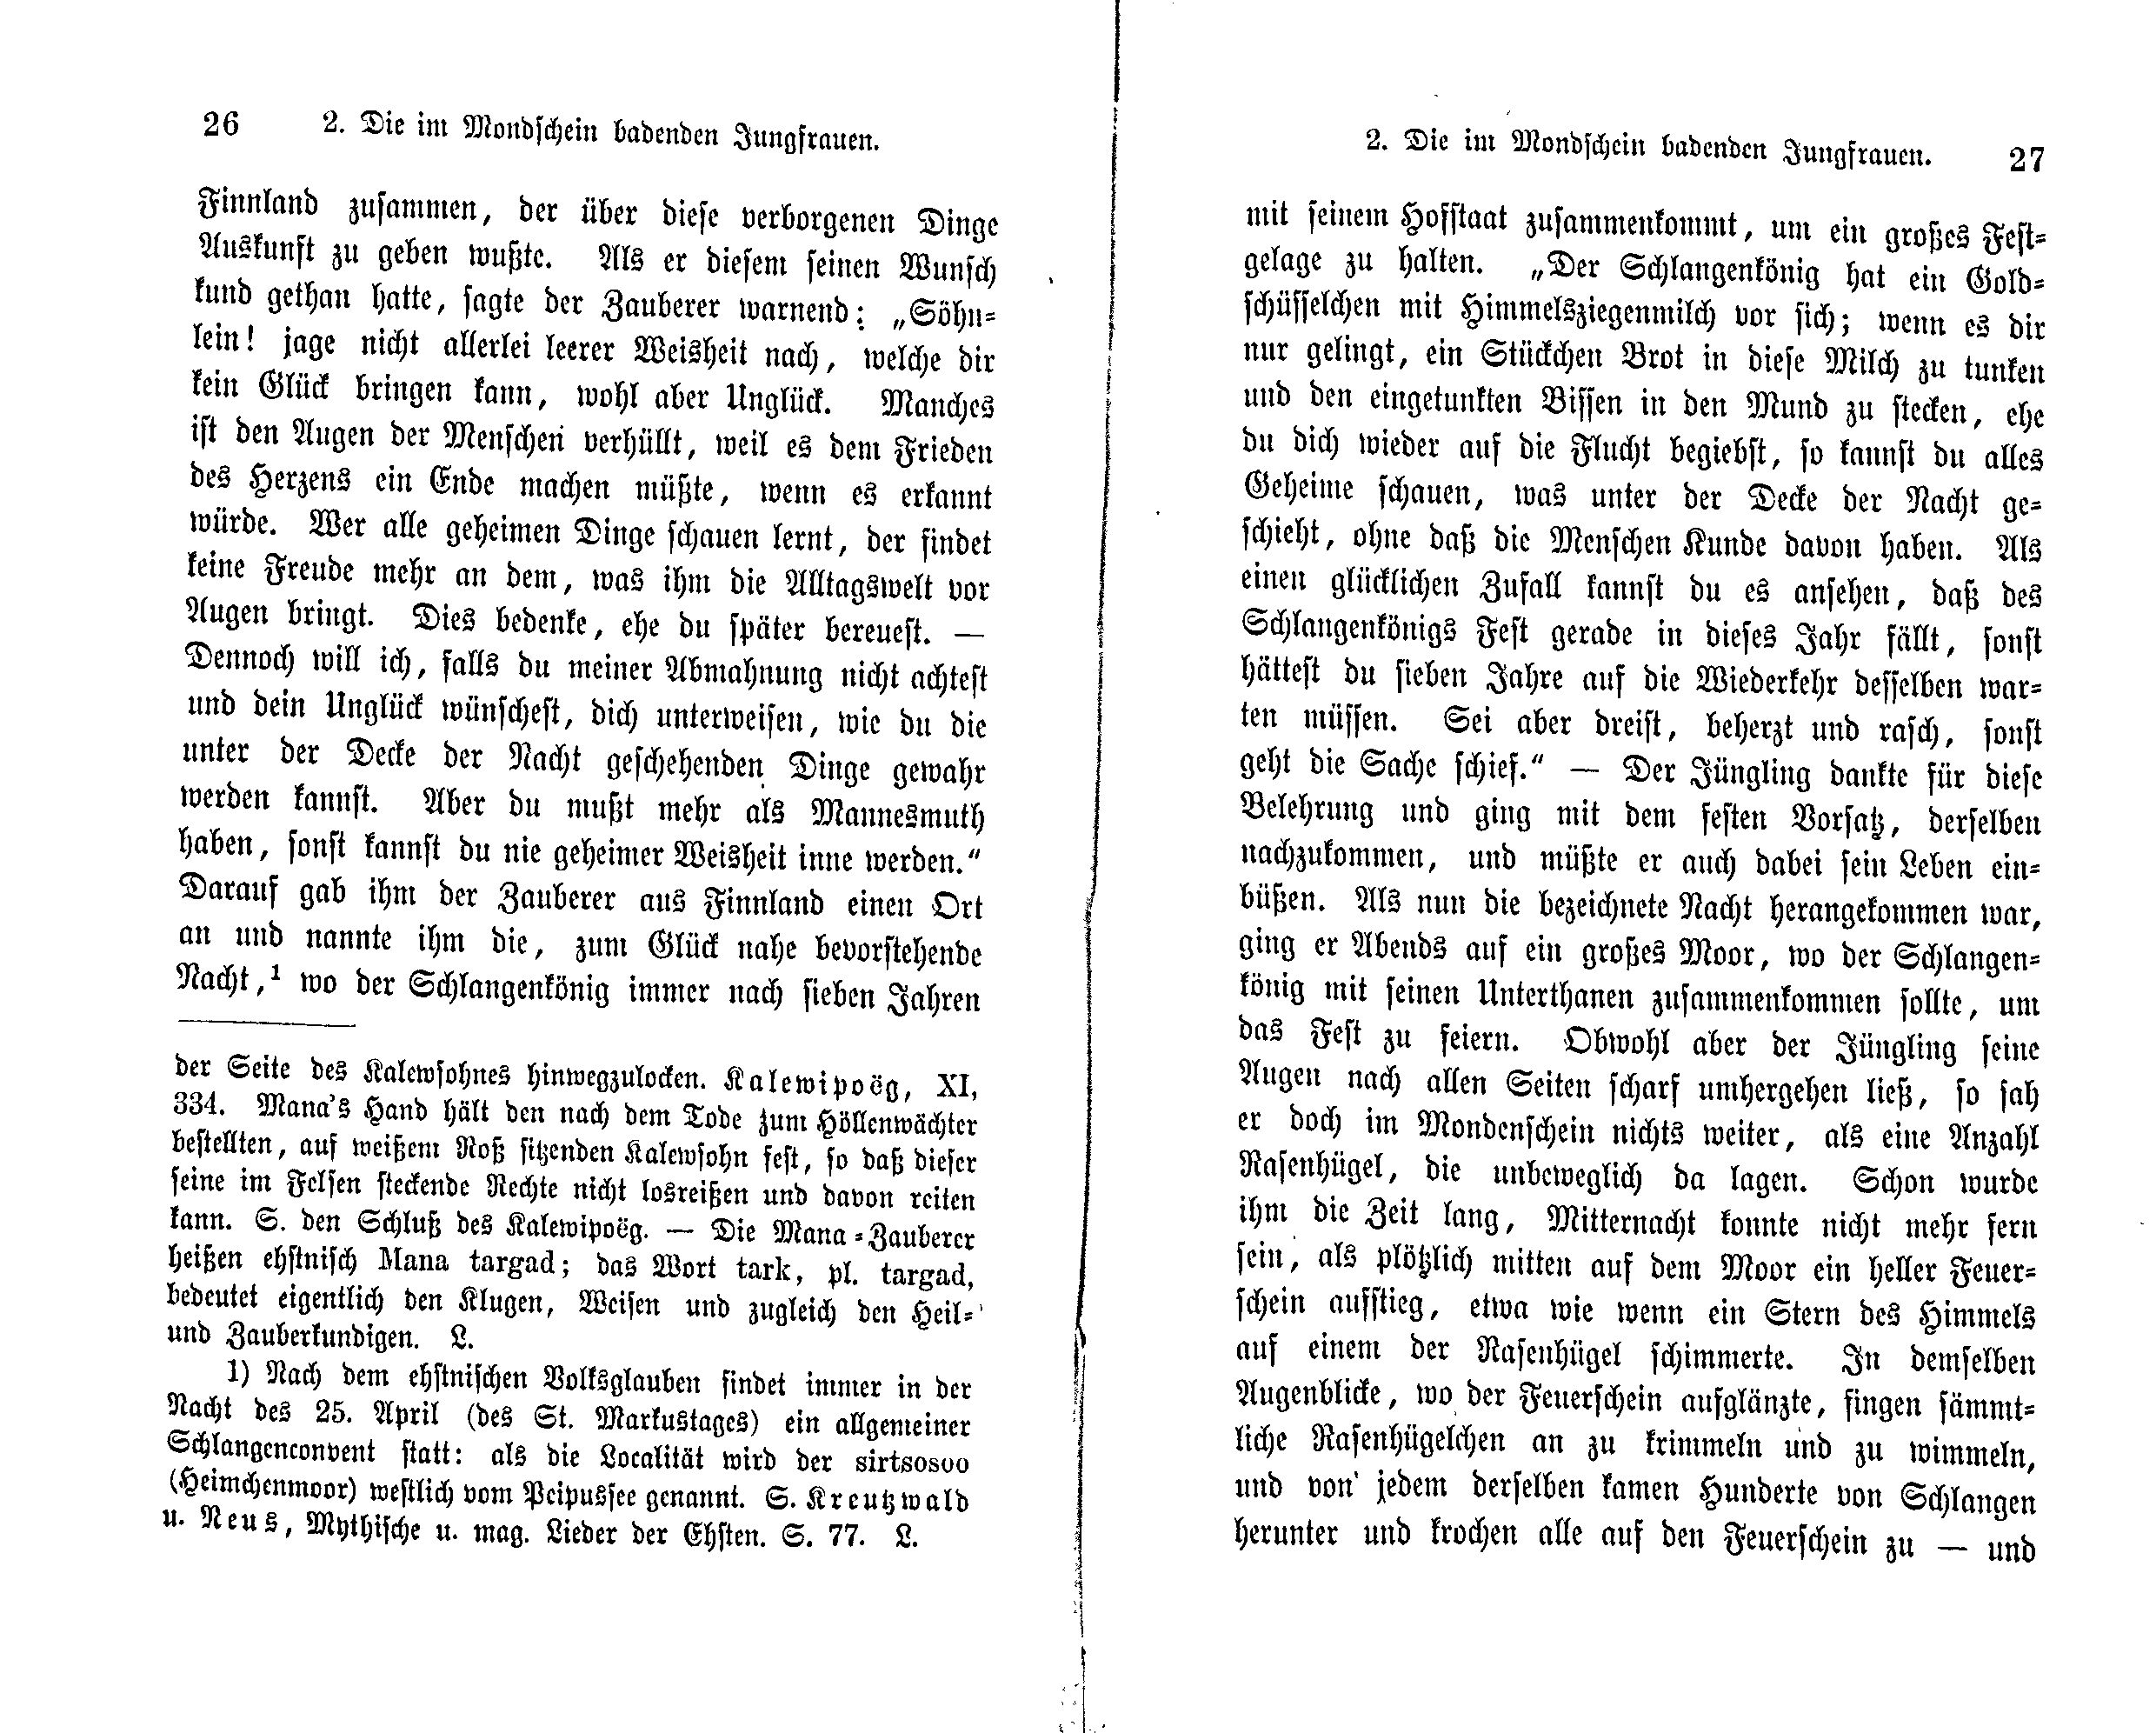 Die im Mondschein badenden Jungfrauen (1869) | 2. (26-27) Haupttext